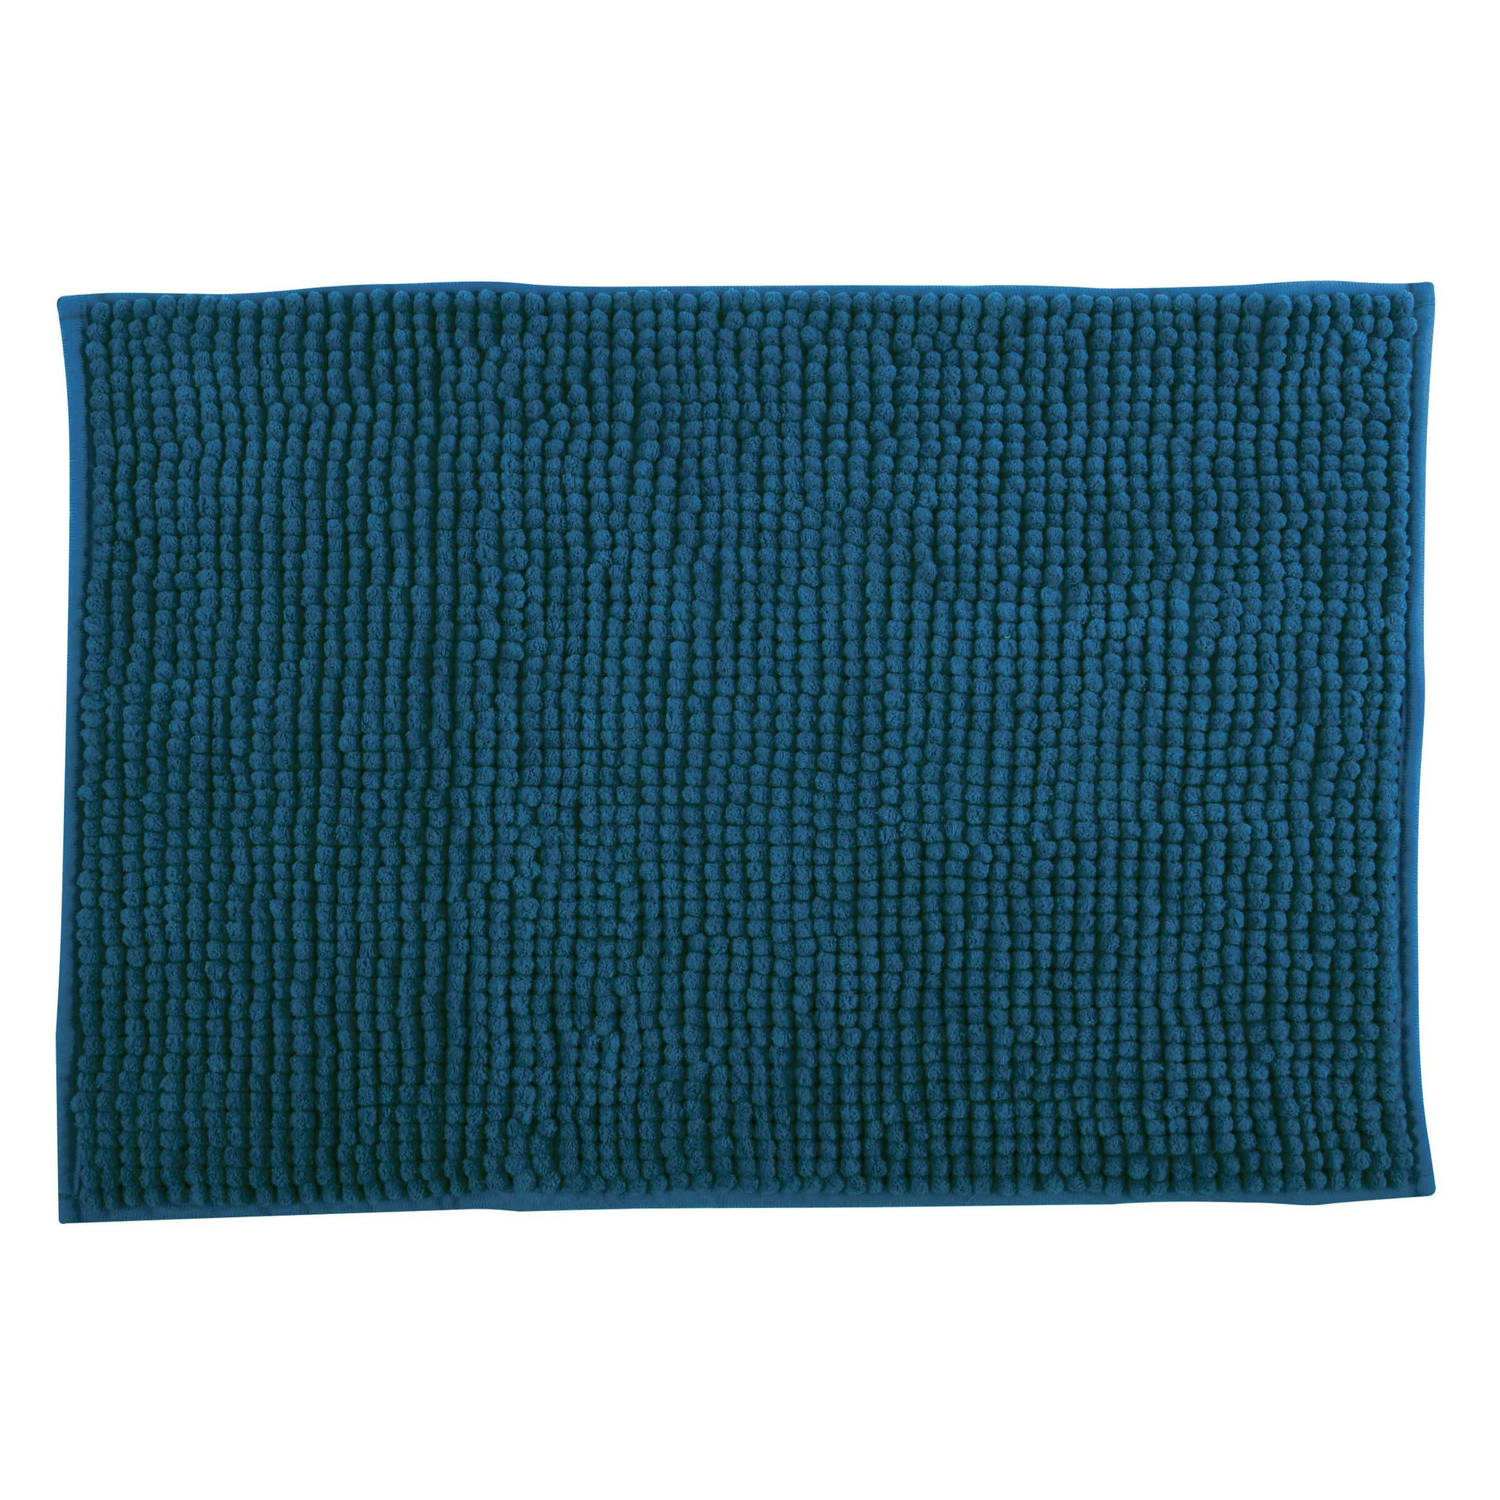 Msv Badkamerkleed-badmat Voor Op De Vloer Donkerblauw 60 X 90 Cm